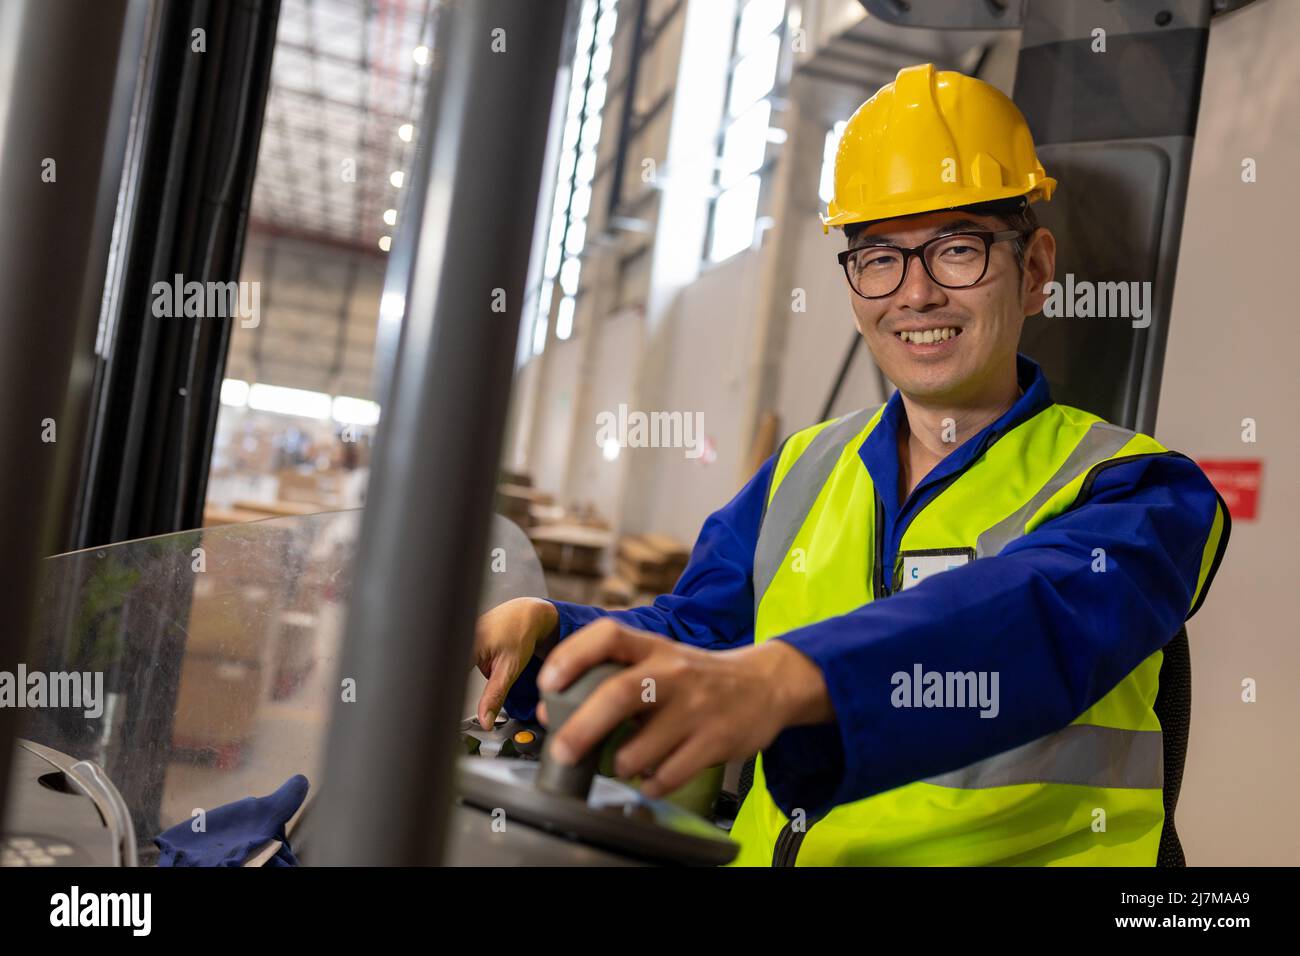 Retrato de un trabajador asiático maduro sonriente con chaleco reflectante y carretilla elevadora de conducción con casco Foto de stock